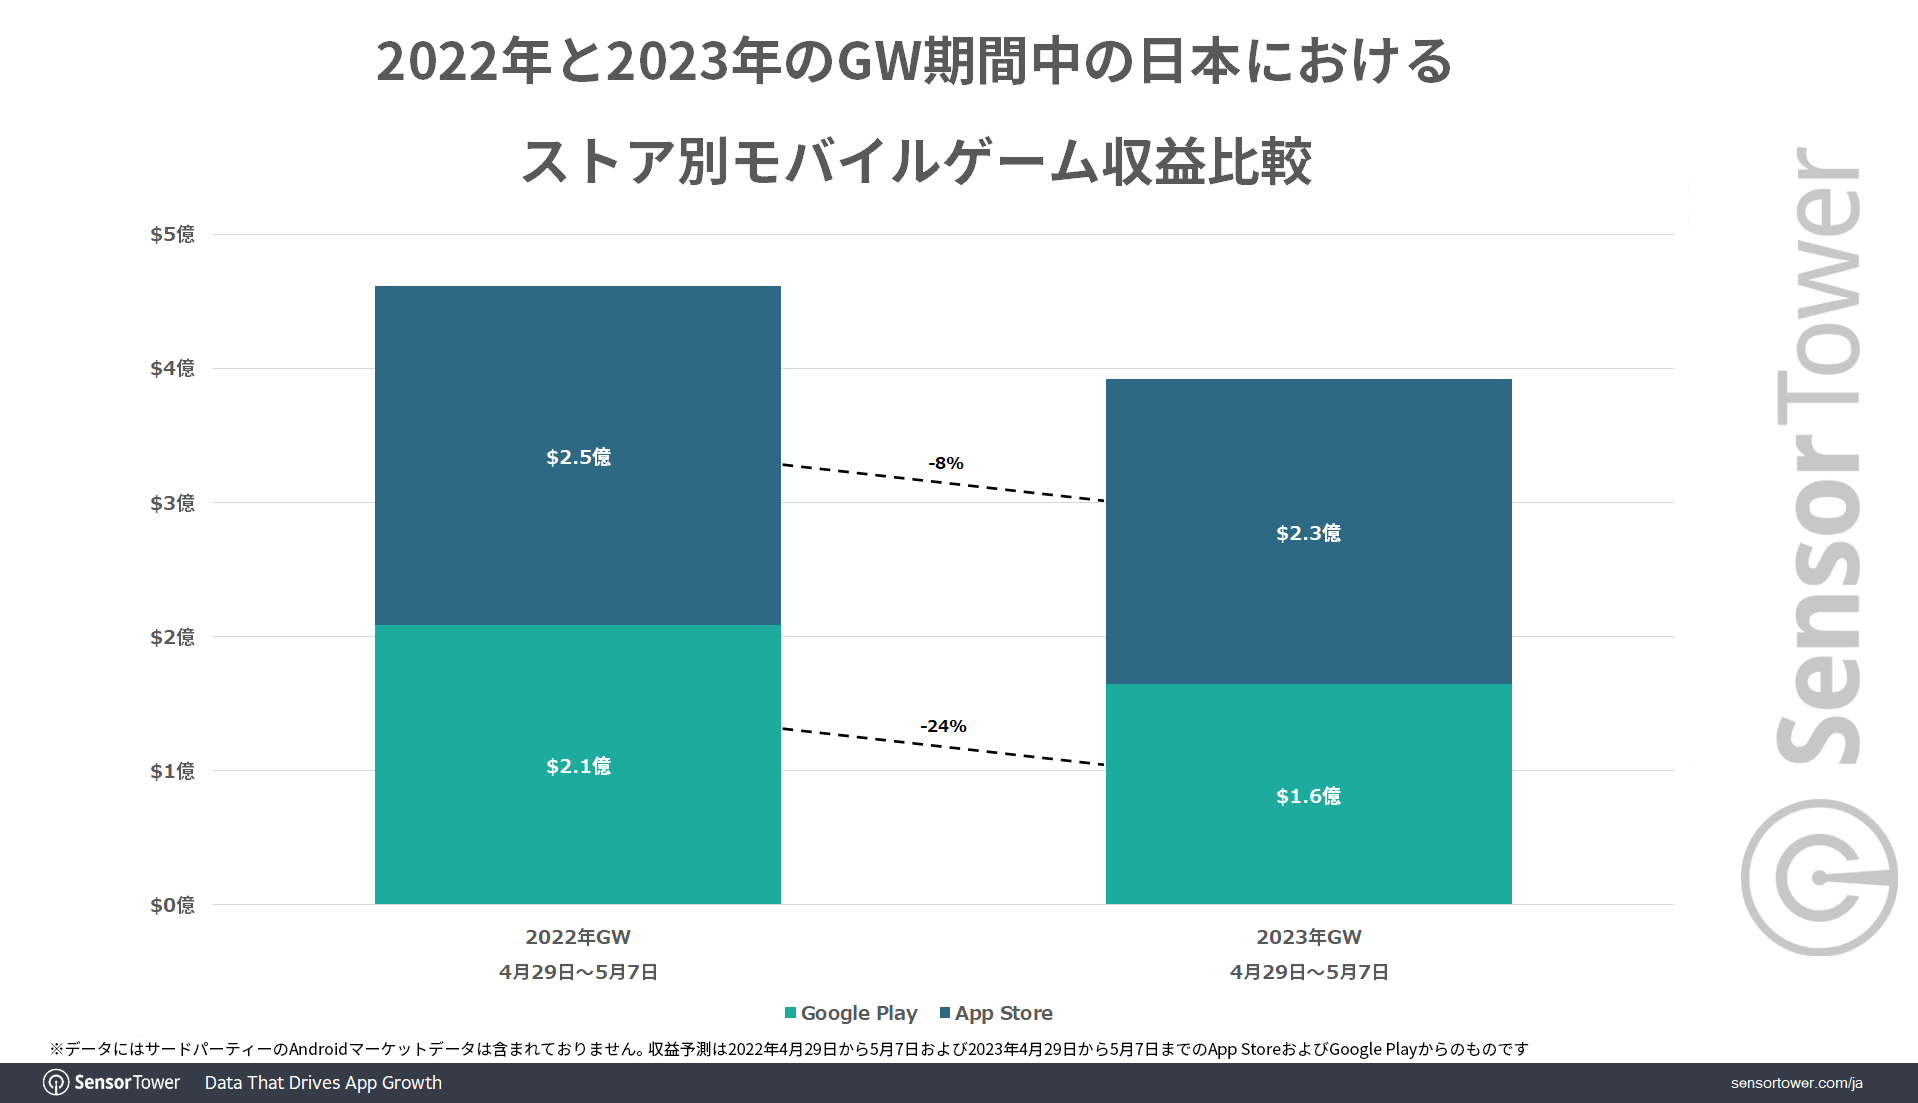 Revenue-Comparison-by-Store-Japan